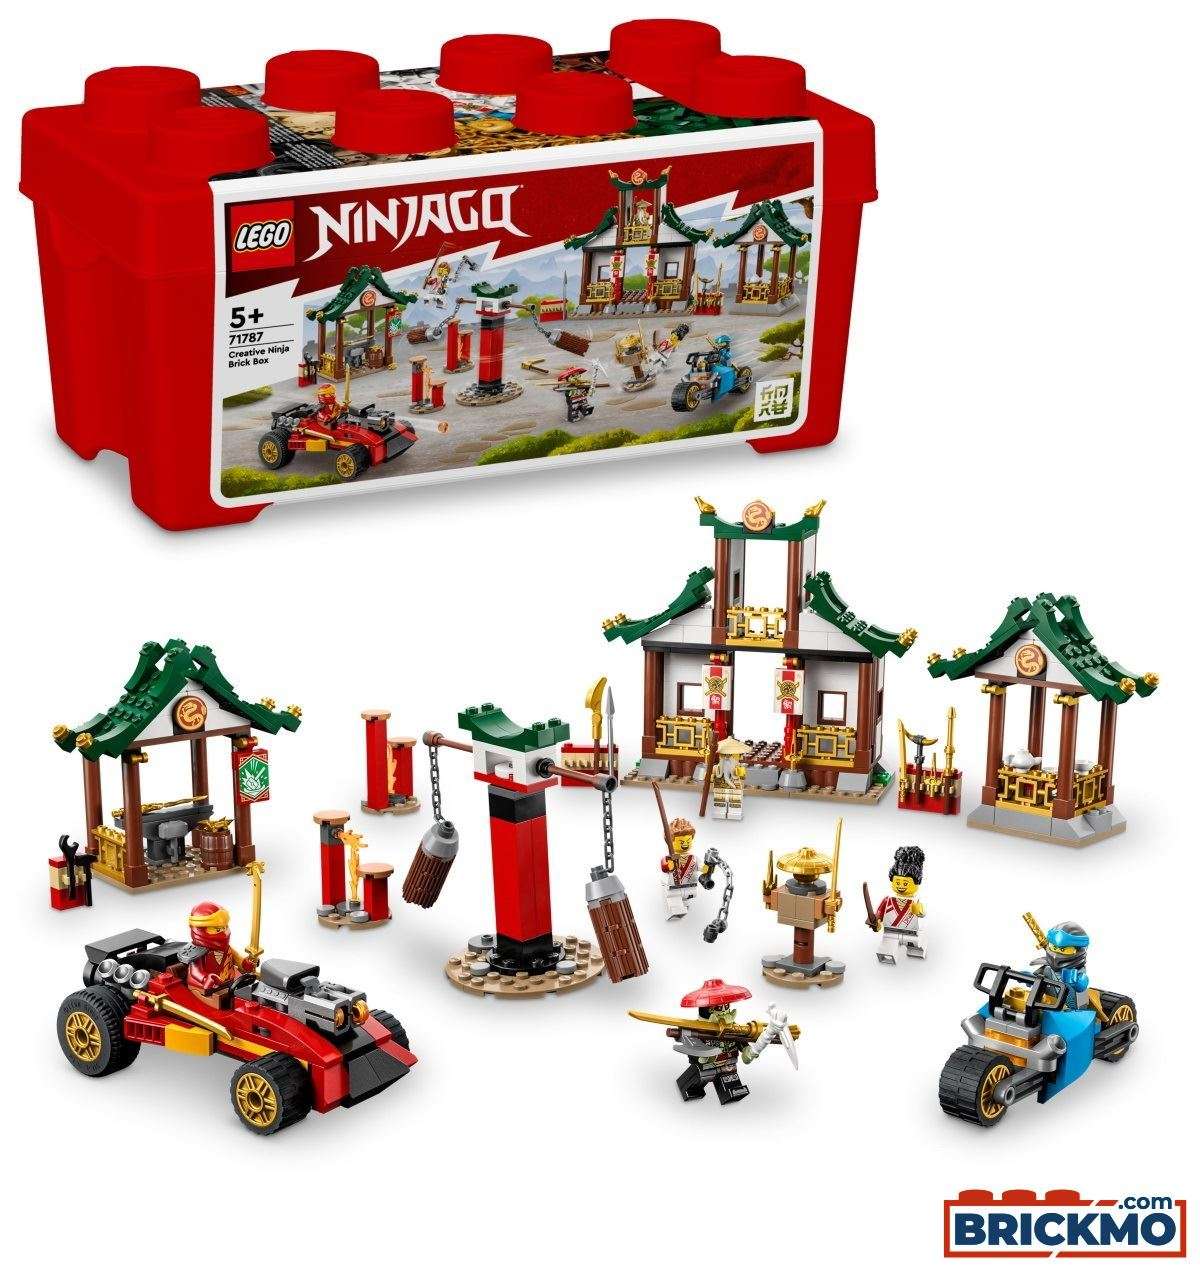 LEGO Ninjago 71787 La boîte de briques créatives ninja 71787